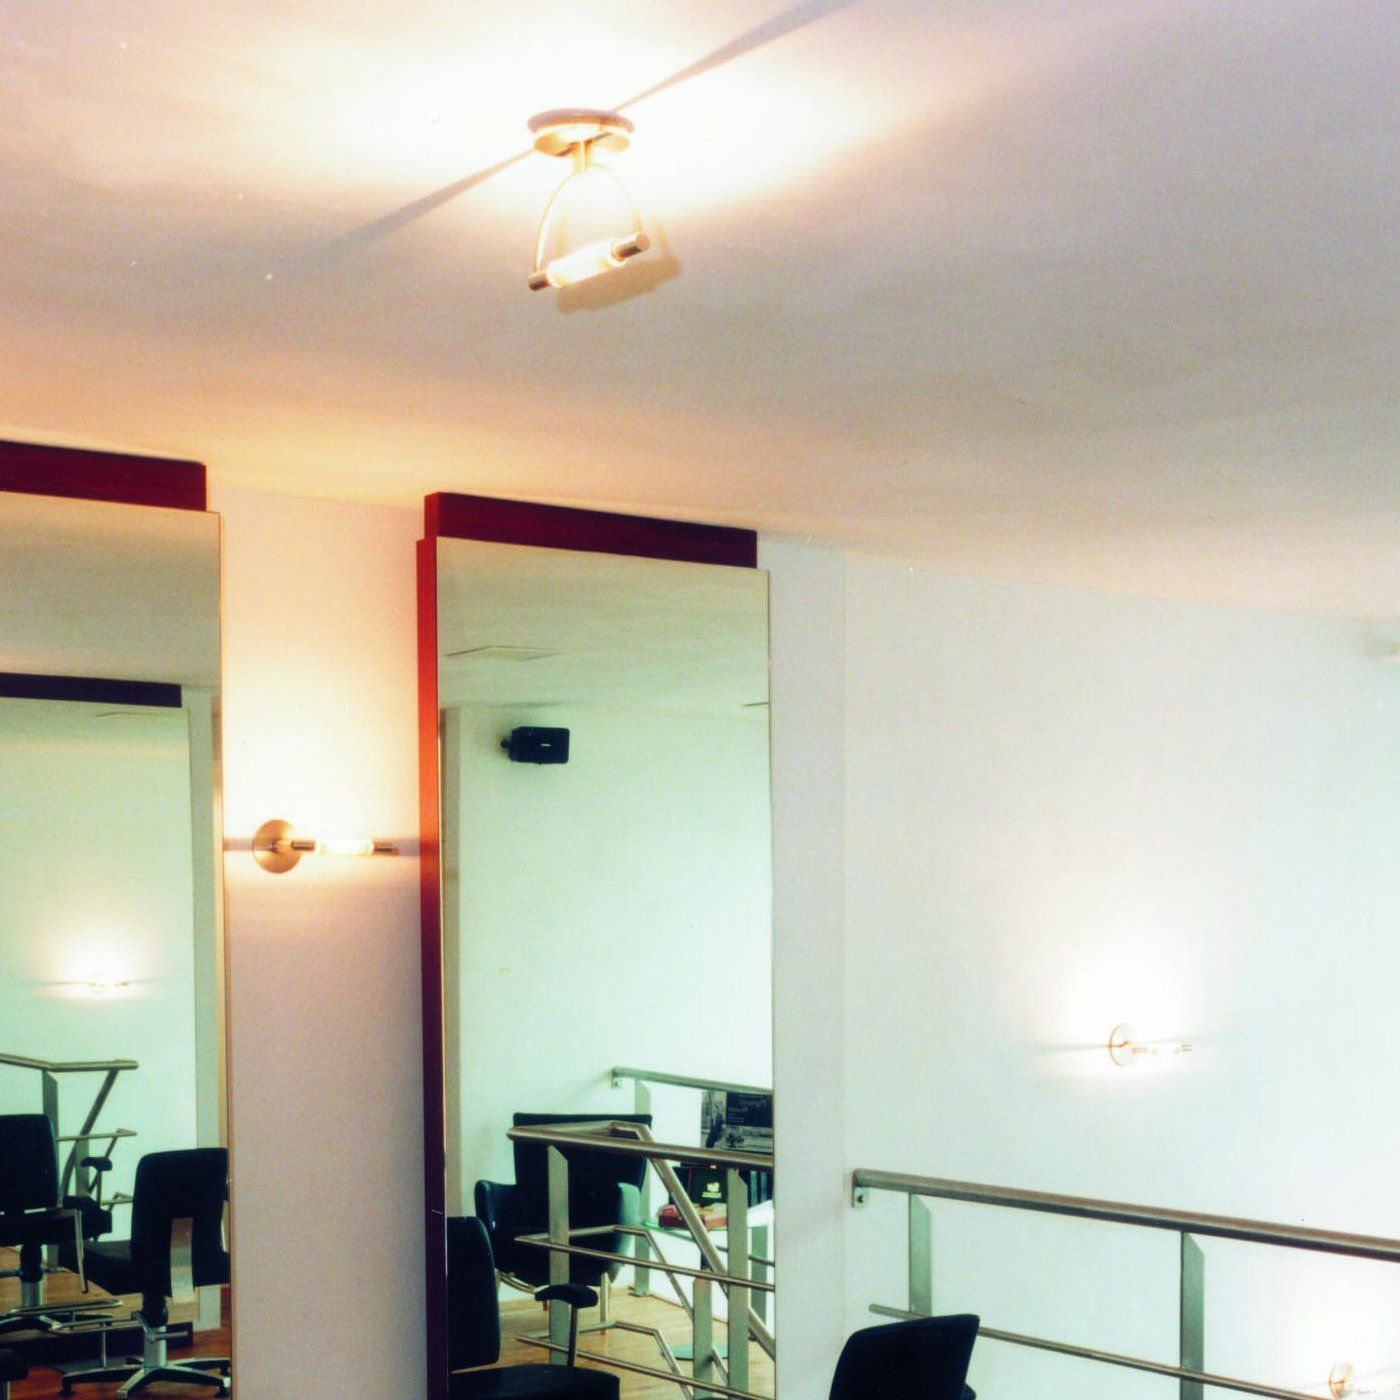 Cini & Nils - Gradi mini soffitto tuttopalescente plafondlamp - KOOT